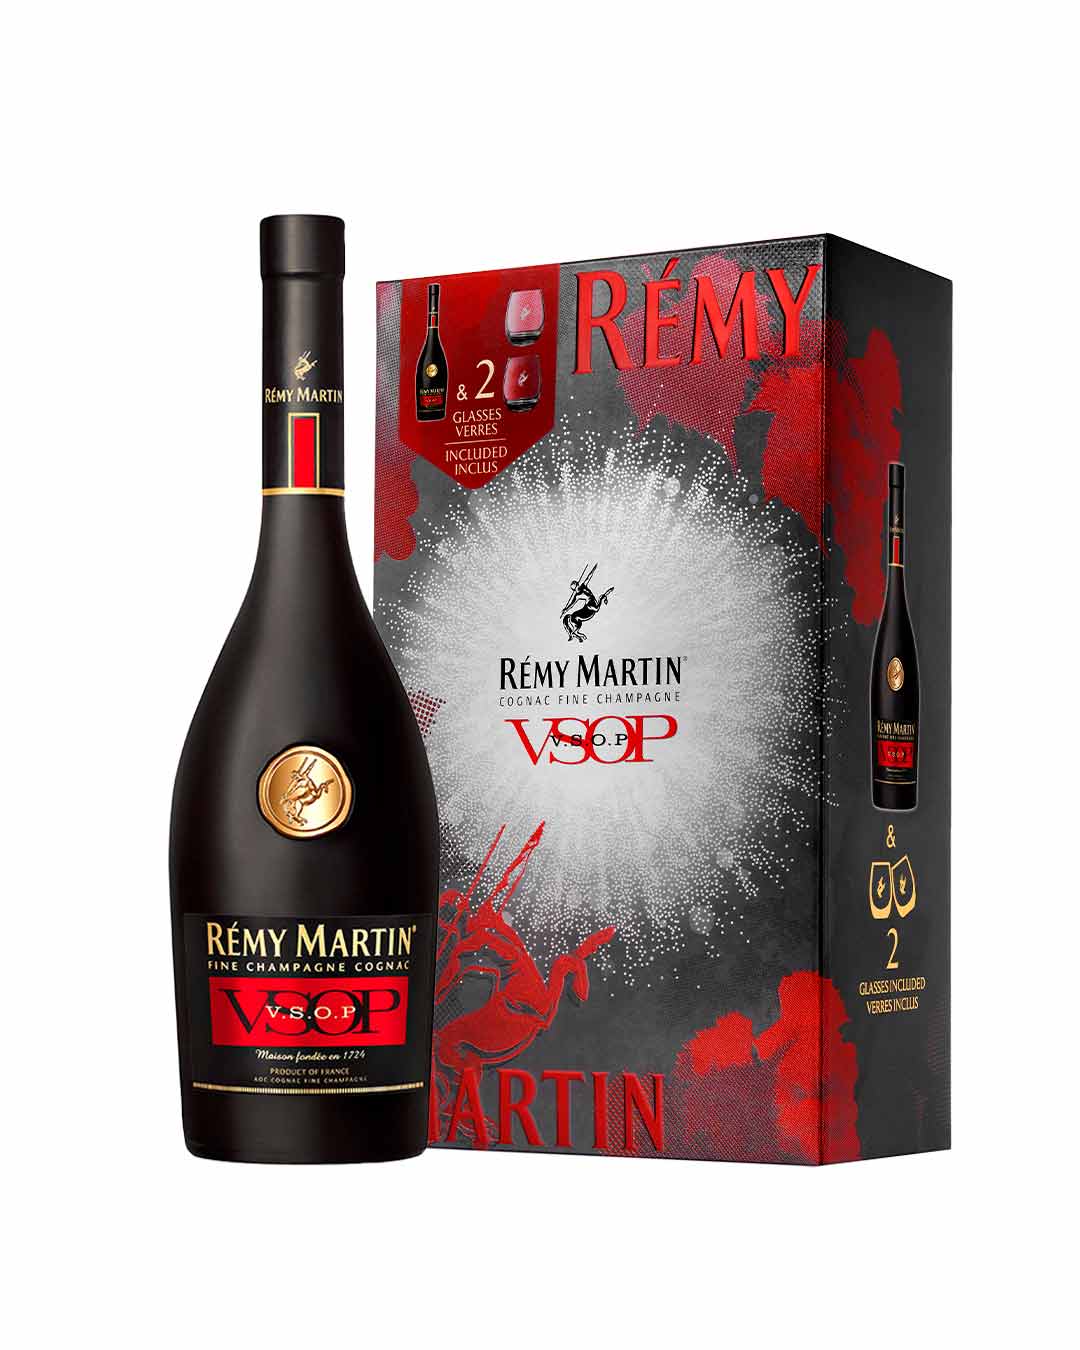 Remy martin vsop - коньяк с многолетней историей успеха